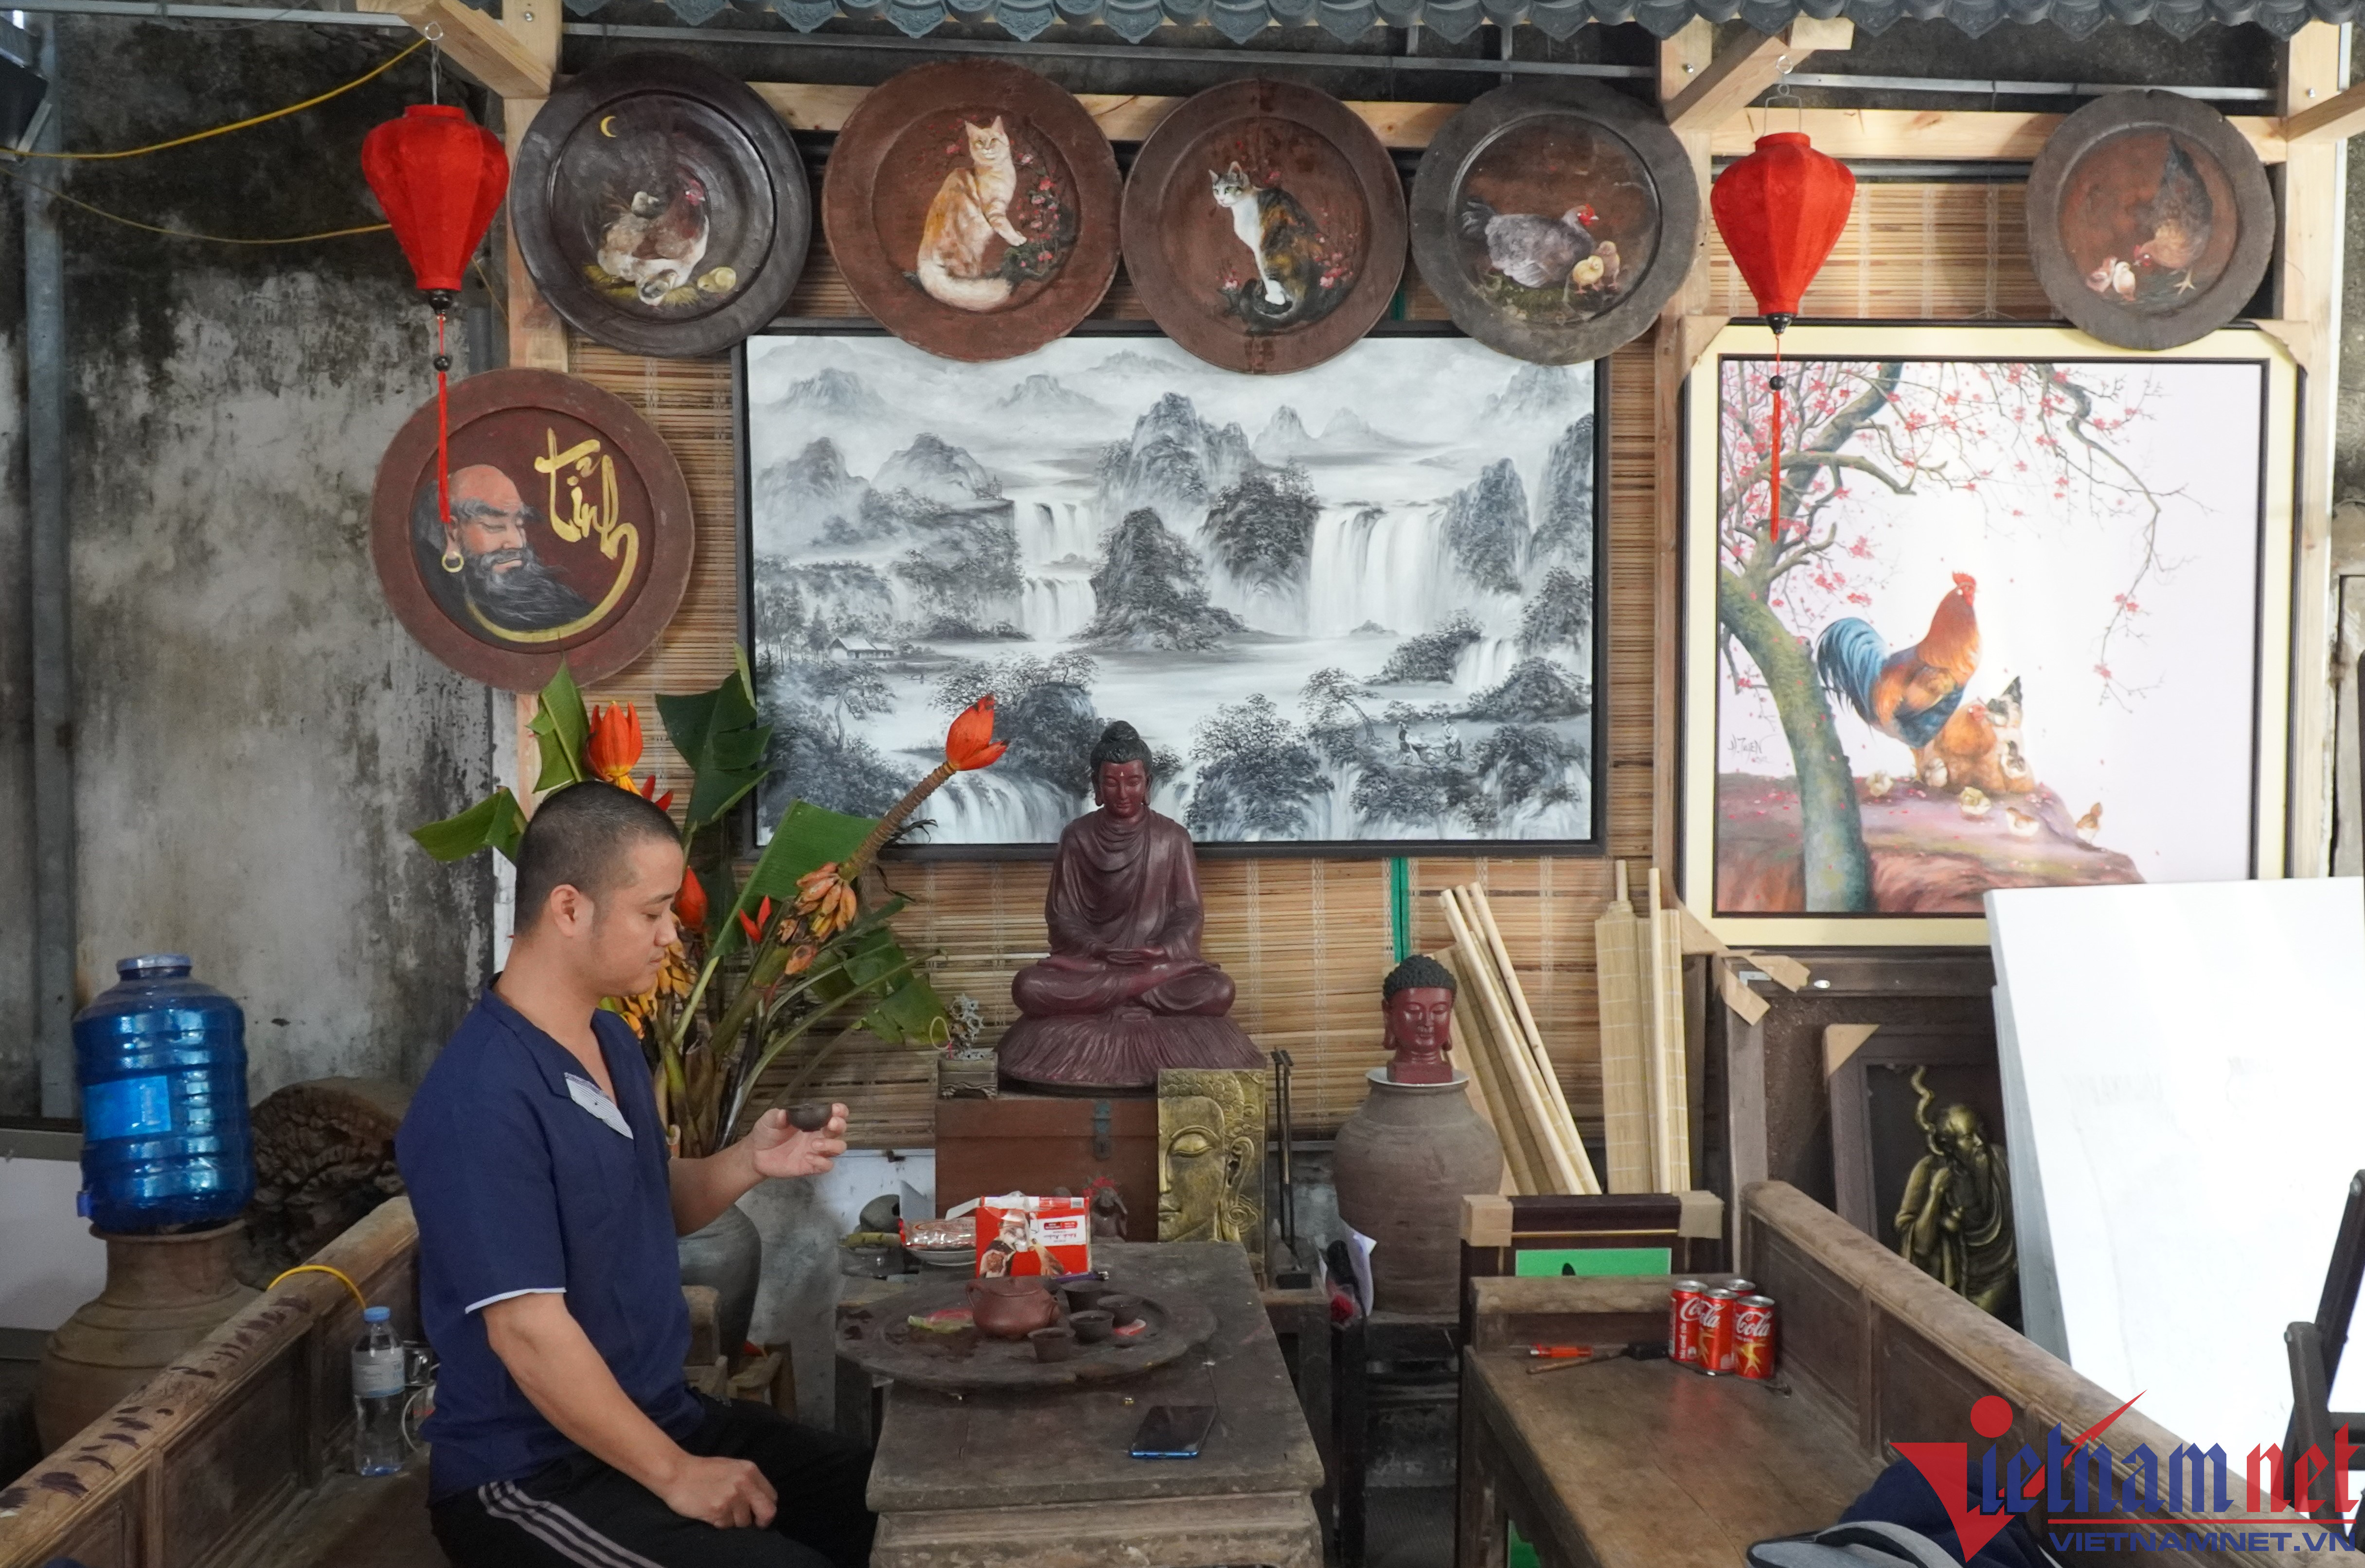 Độc đáo những bức tranh vẽ trên mâm gỗ xưa ở Thanh Hoá